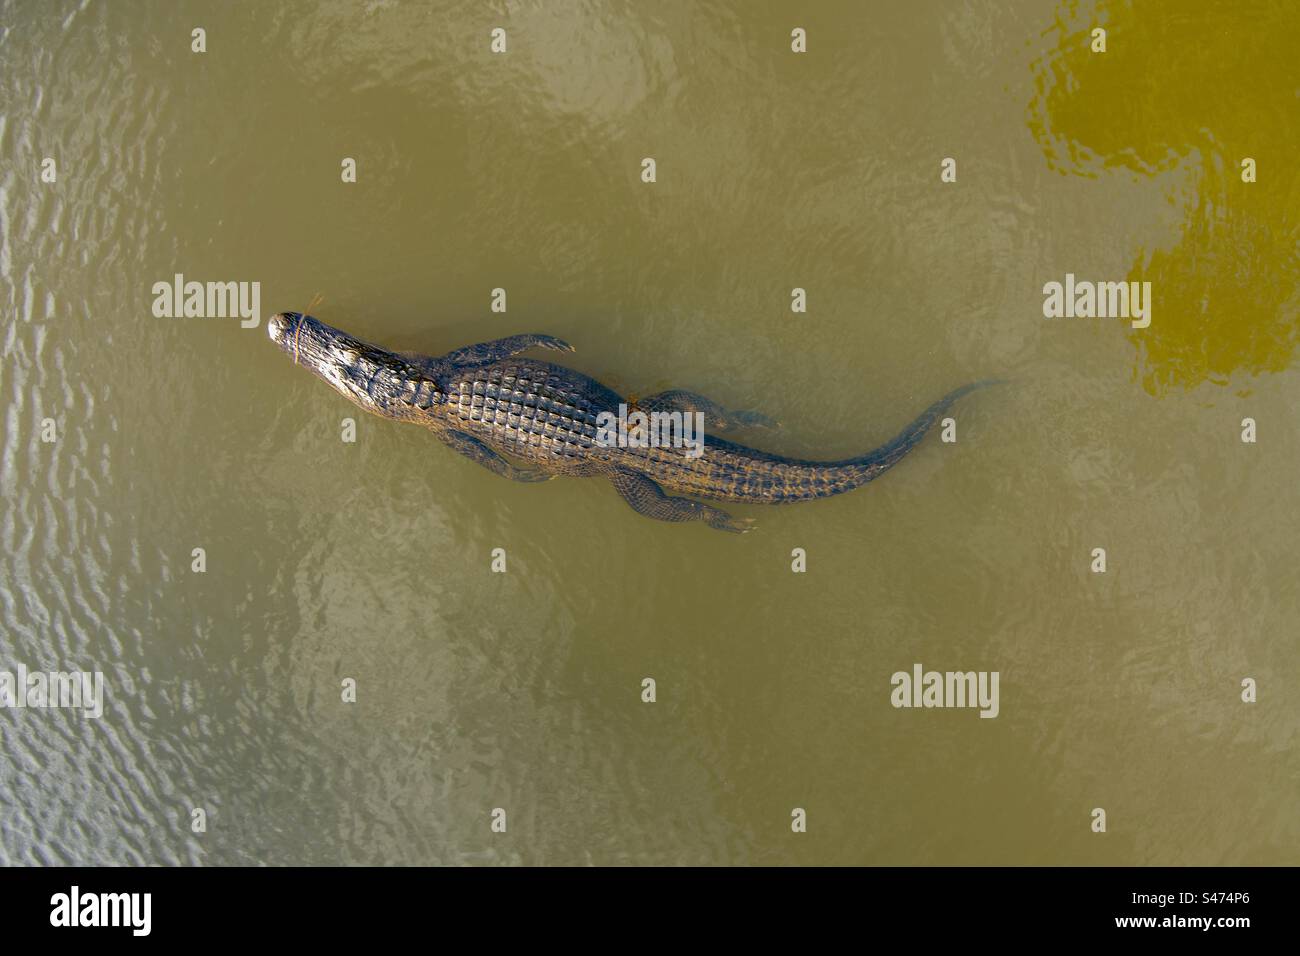 American Alligator in Mobile Bay Stock Photo